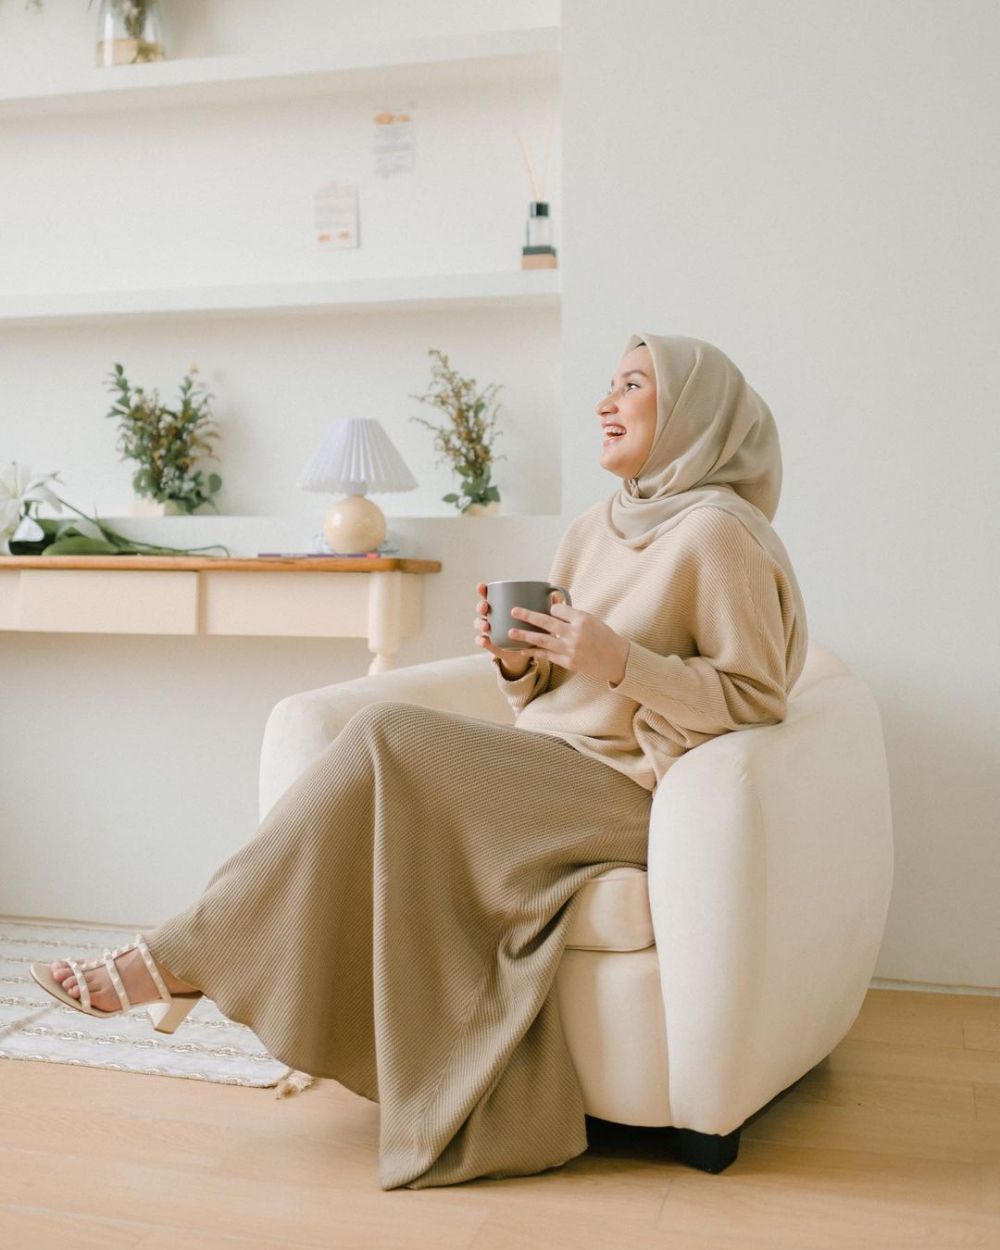 11 Padu Padan Style Hijab Warna Netral ala Dwi Handayani